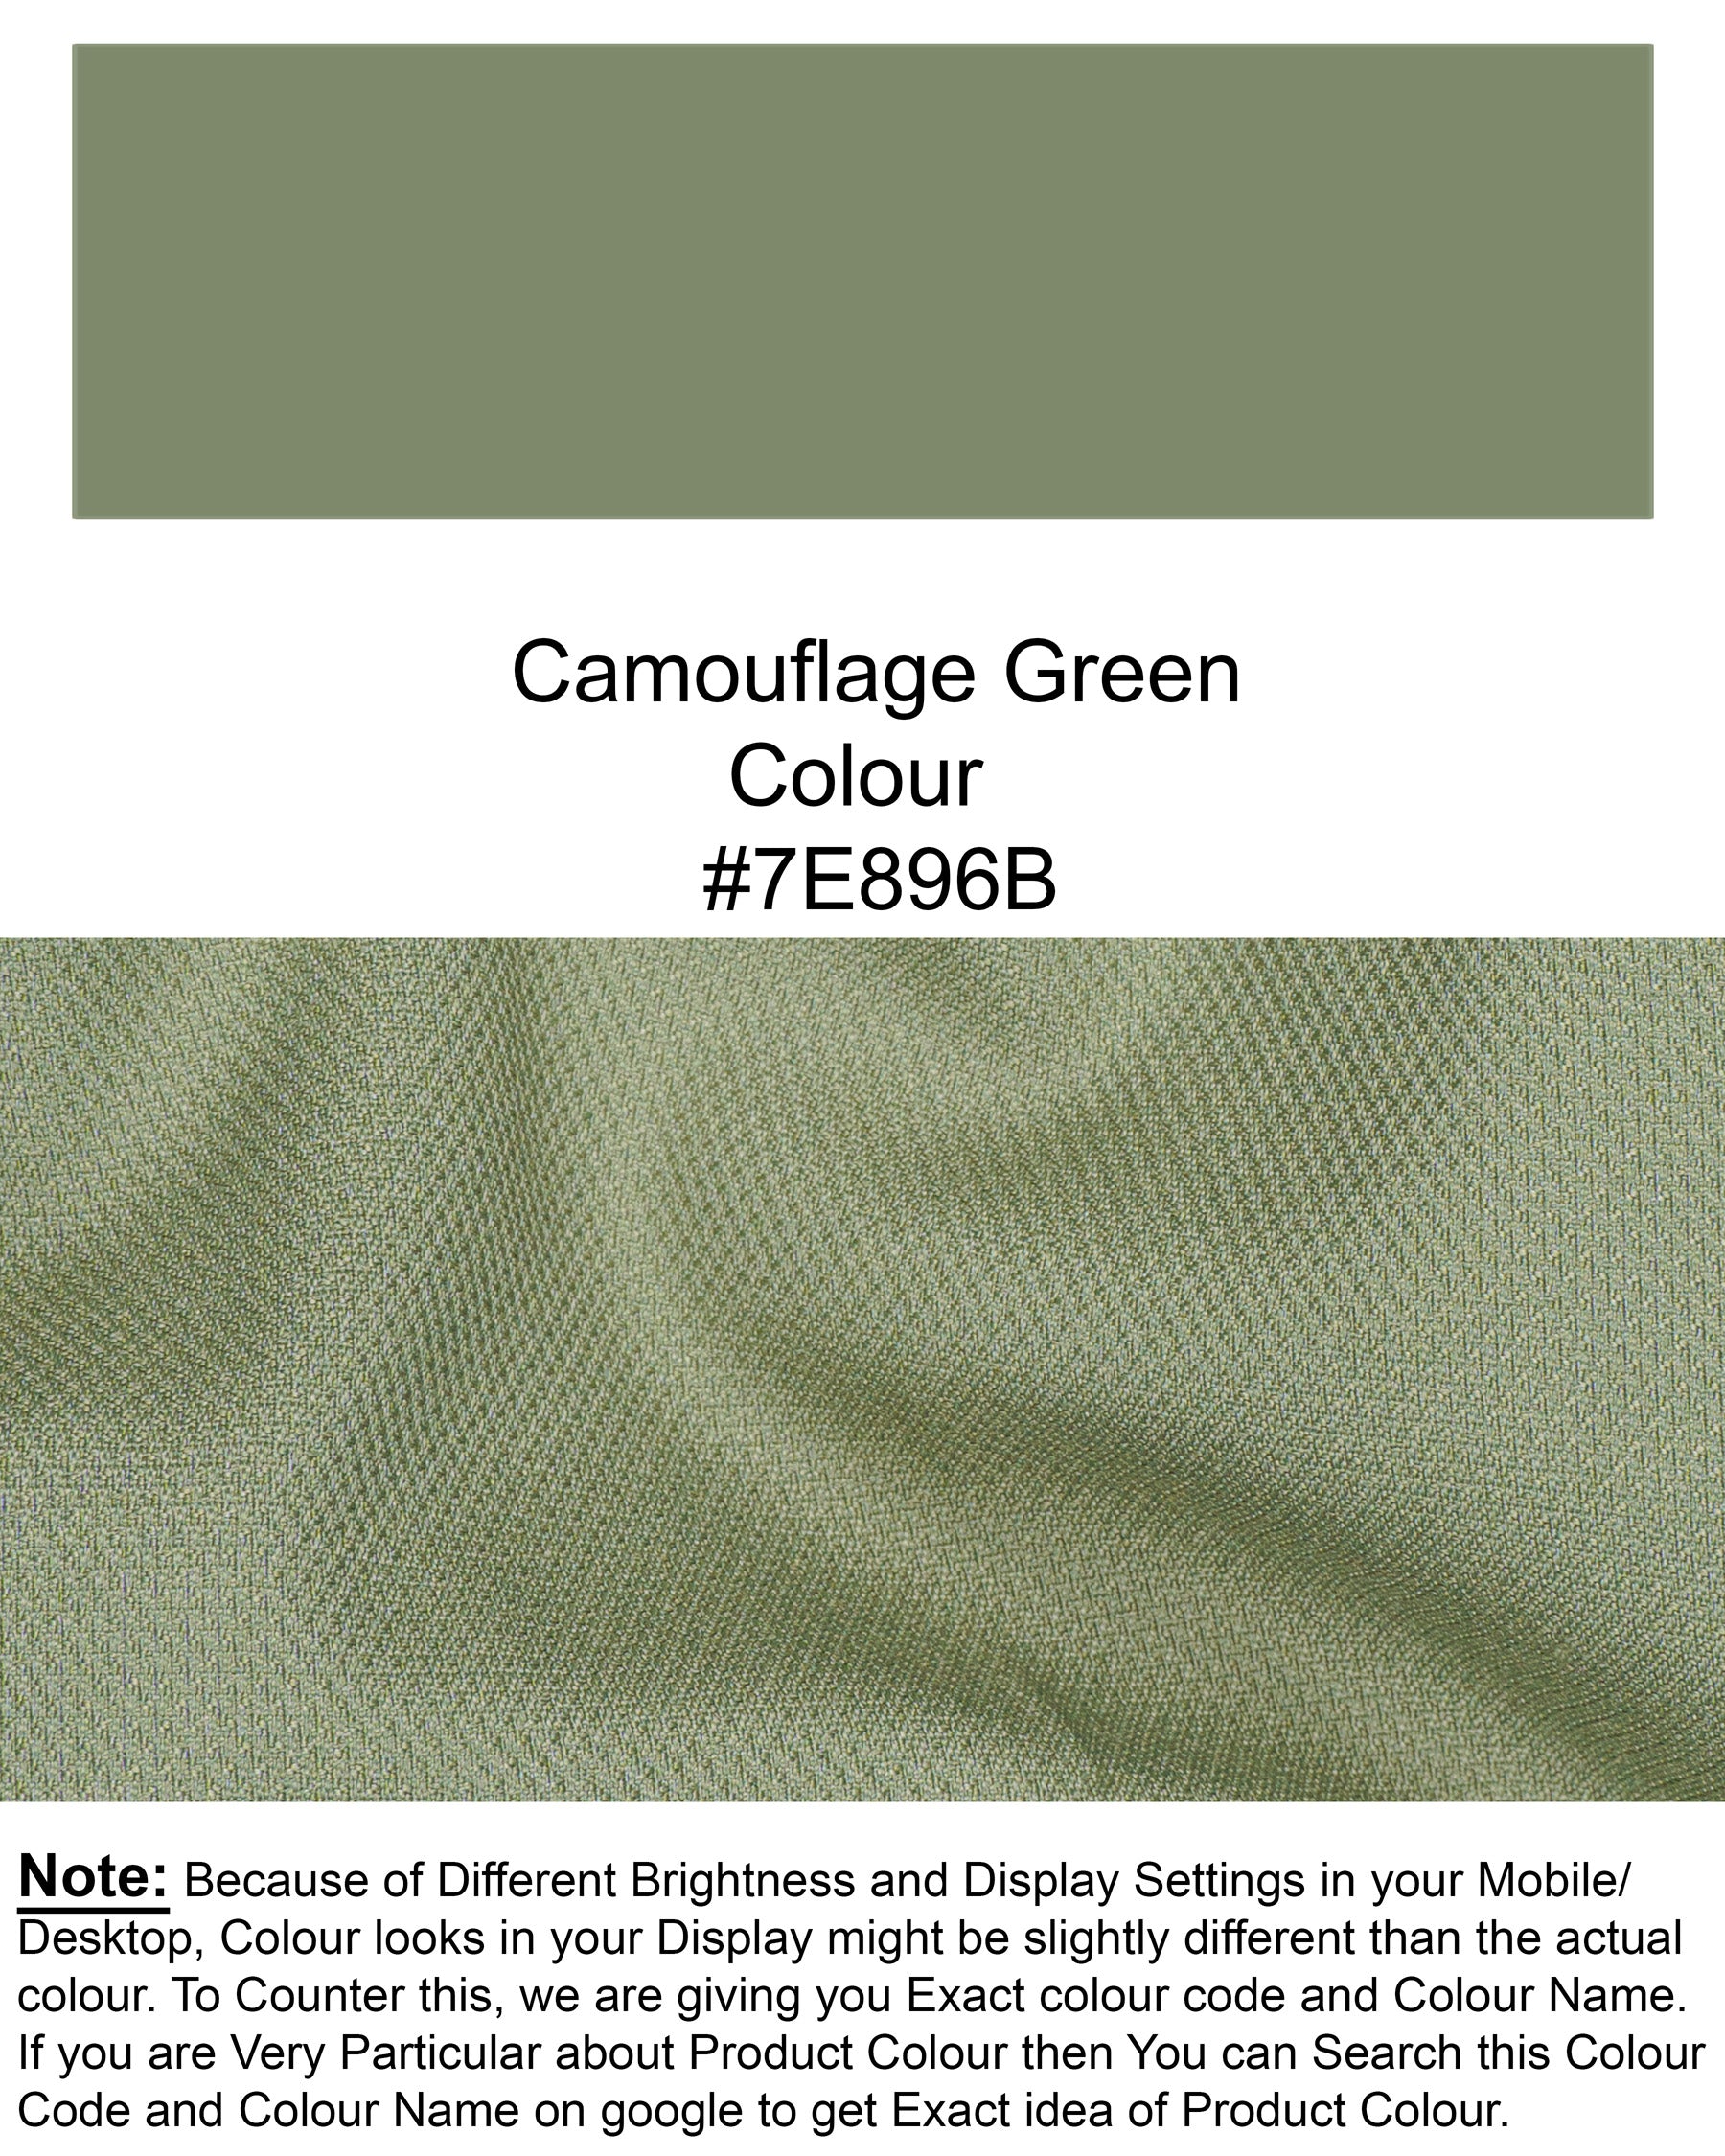 Camouflage Green Wool rich Waistcoat V1437-36, V1437-38, V1437-40, V1437-42, V1437-44, V1437-46, V1437-48, V1437-50, V1437-52, V1437-54, V1437-56, V1437-58, V1437-60